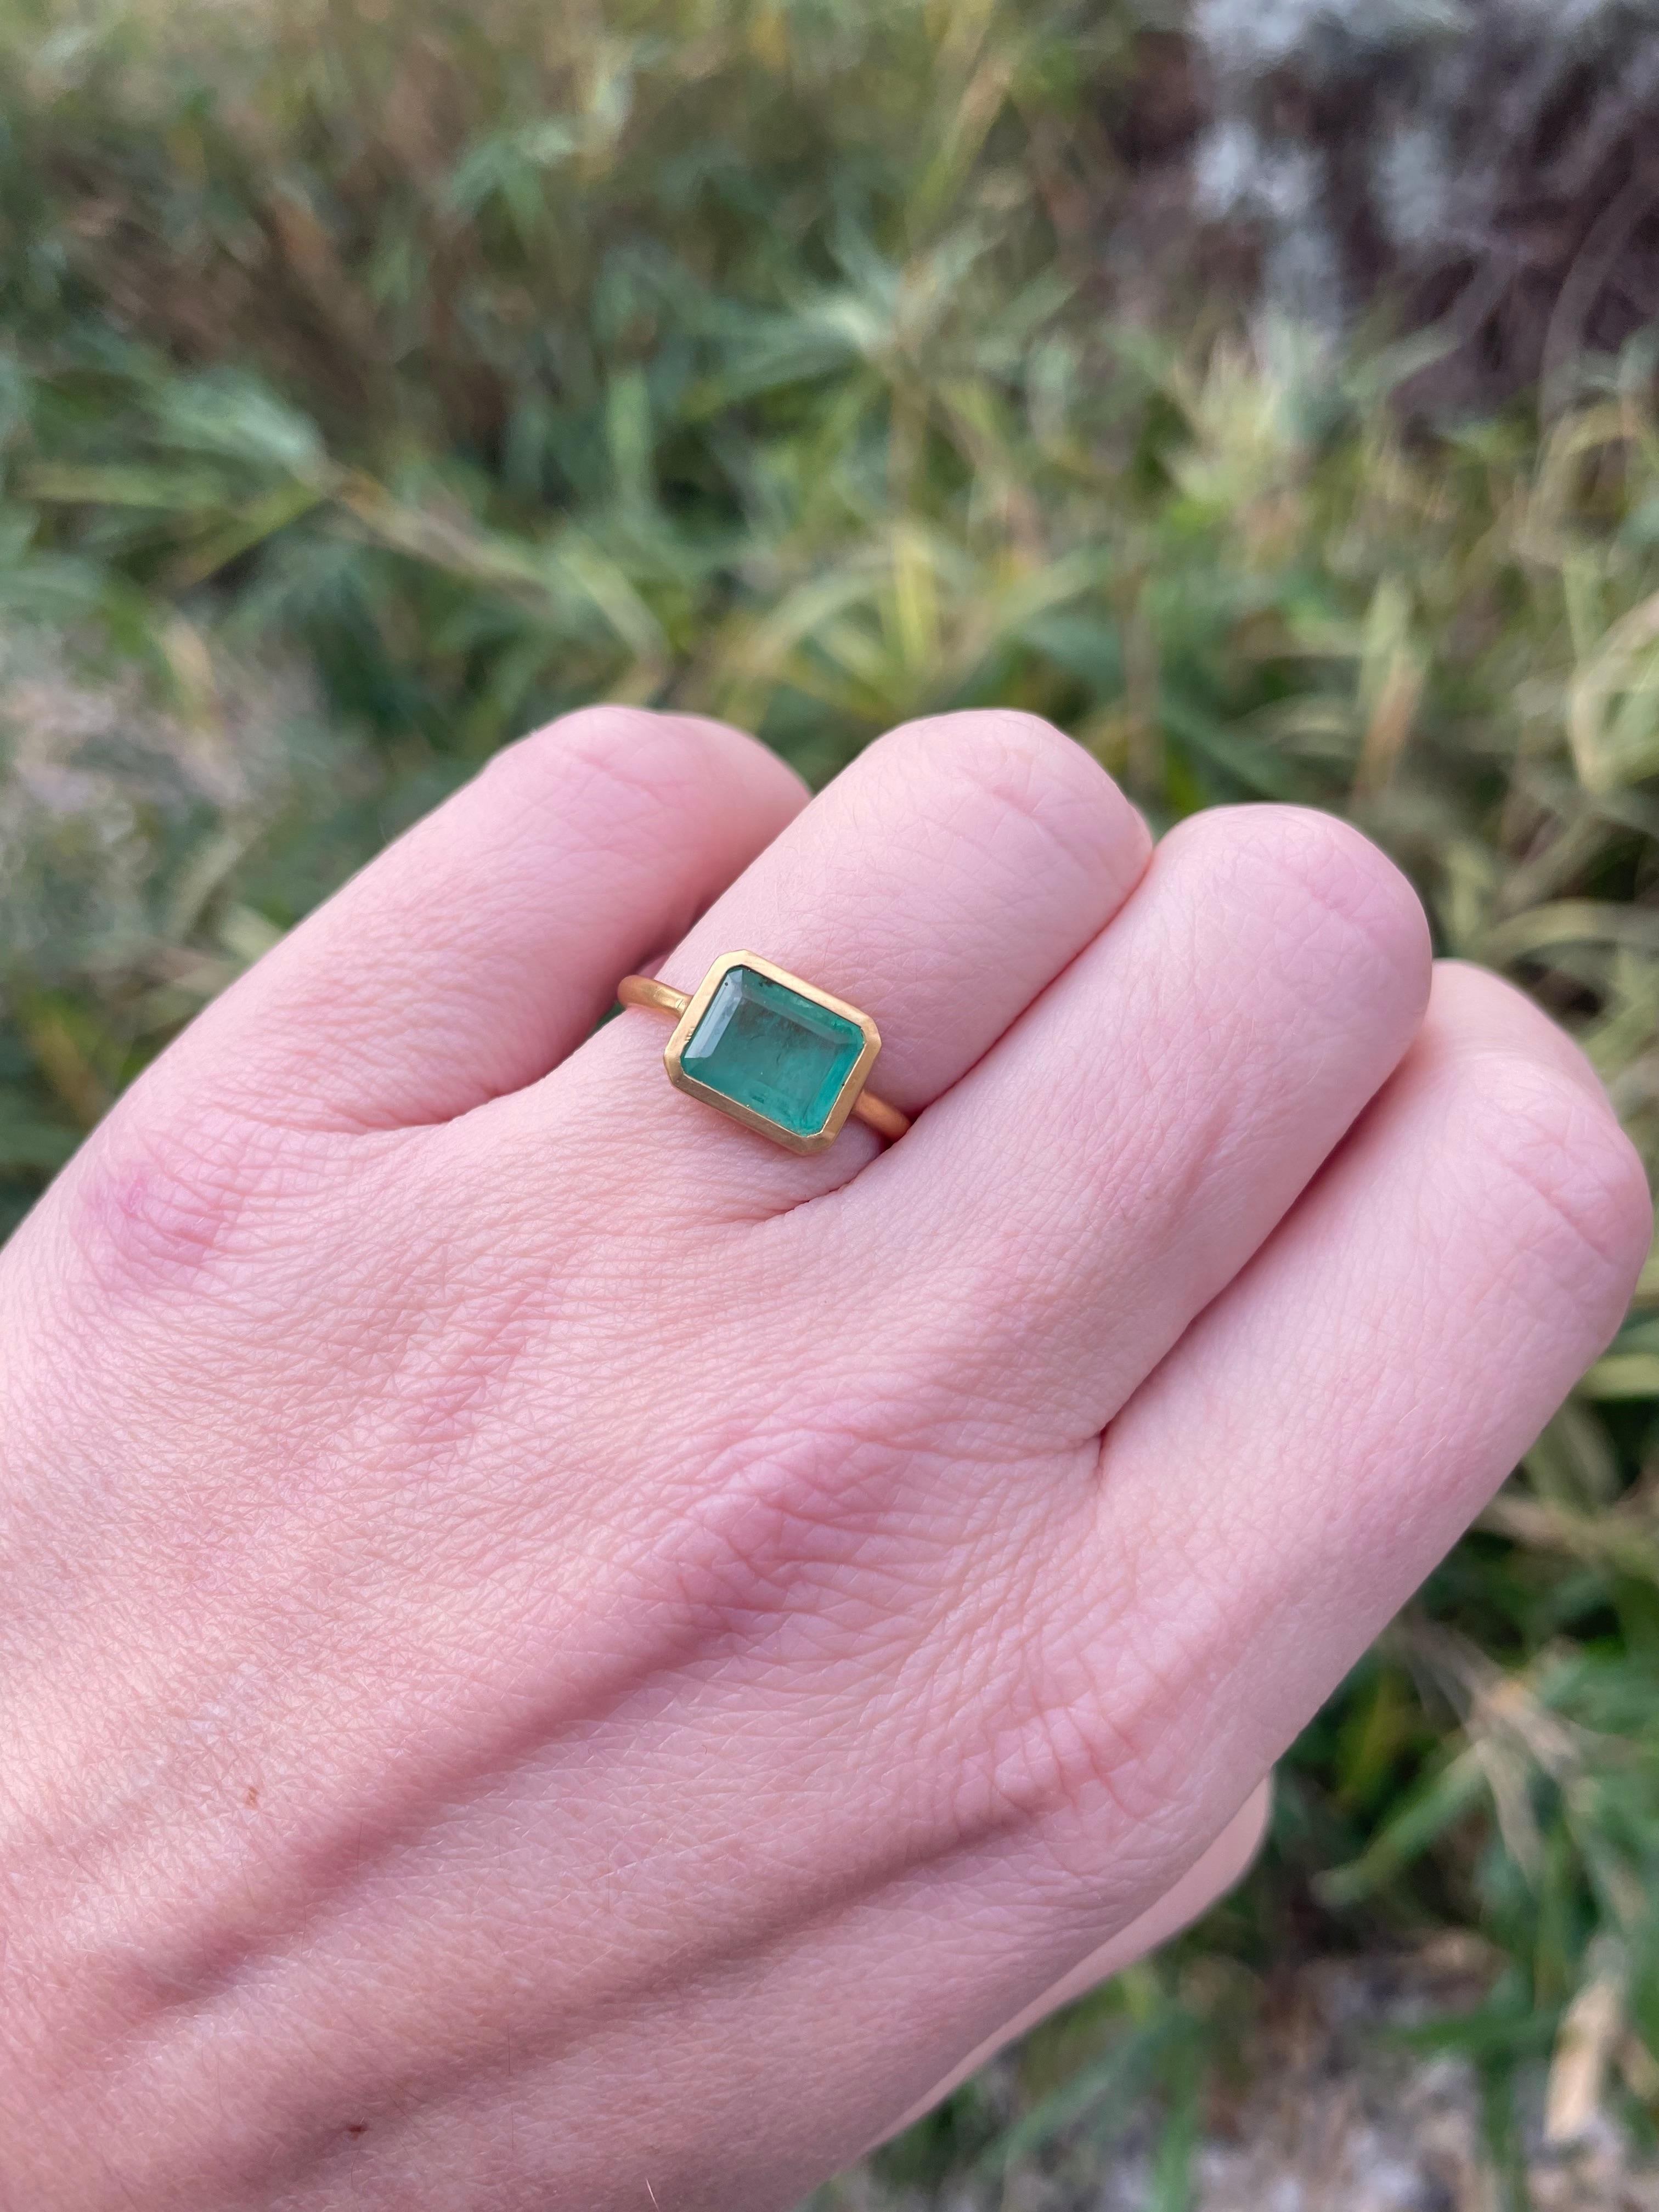 Dieser schlichte Ring von Scrives besteht aus einem Smaragd  im rechteckigen Smaragdschliff. 
Der Stein ist in eine geschlossene 22-karätige Goldfassung gefasst.
Dieser Smaragd ist natürlich, nicht behandelt und hat natürliche und typische